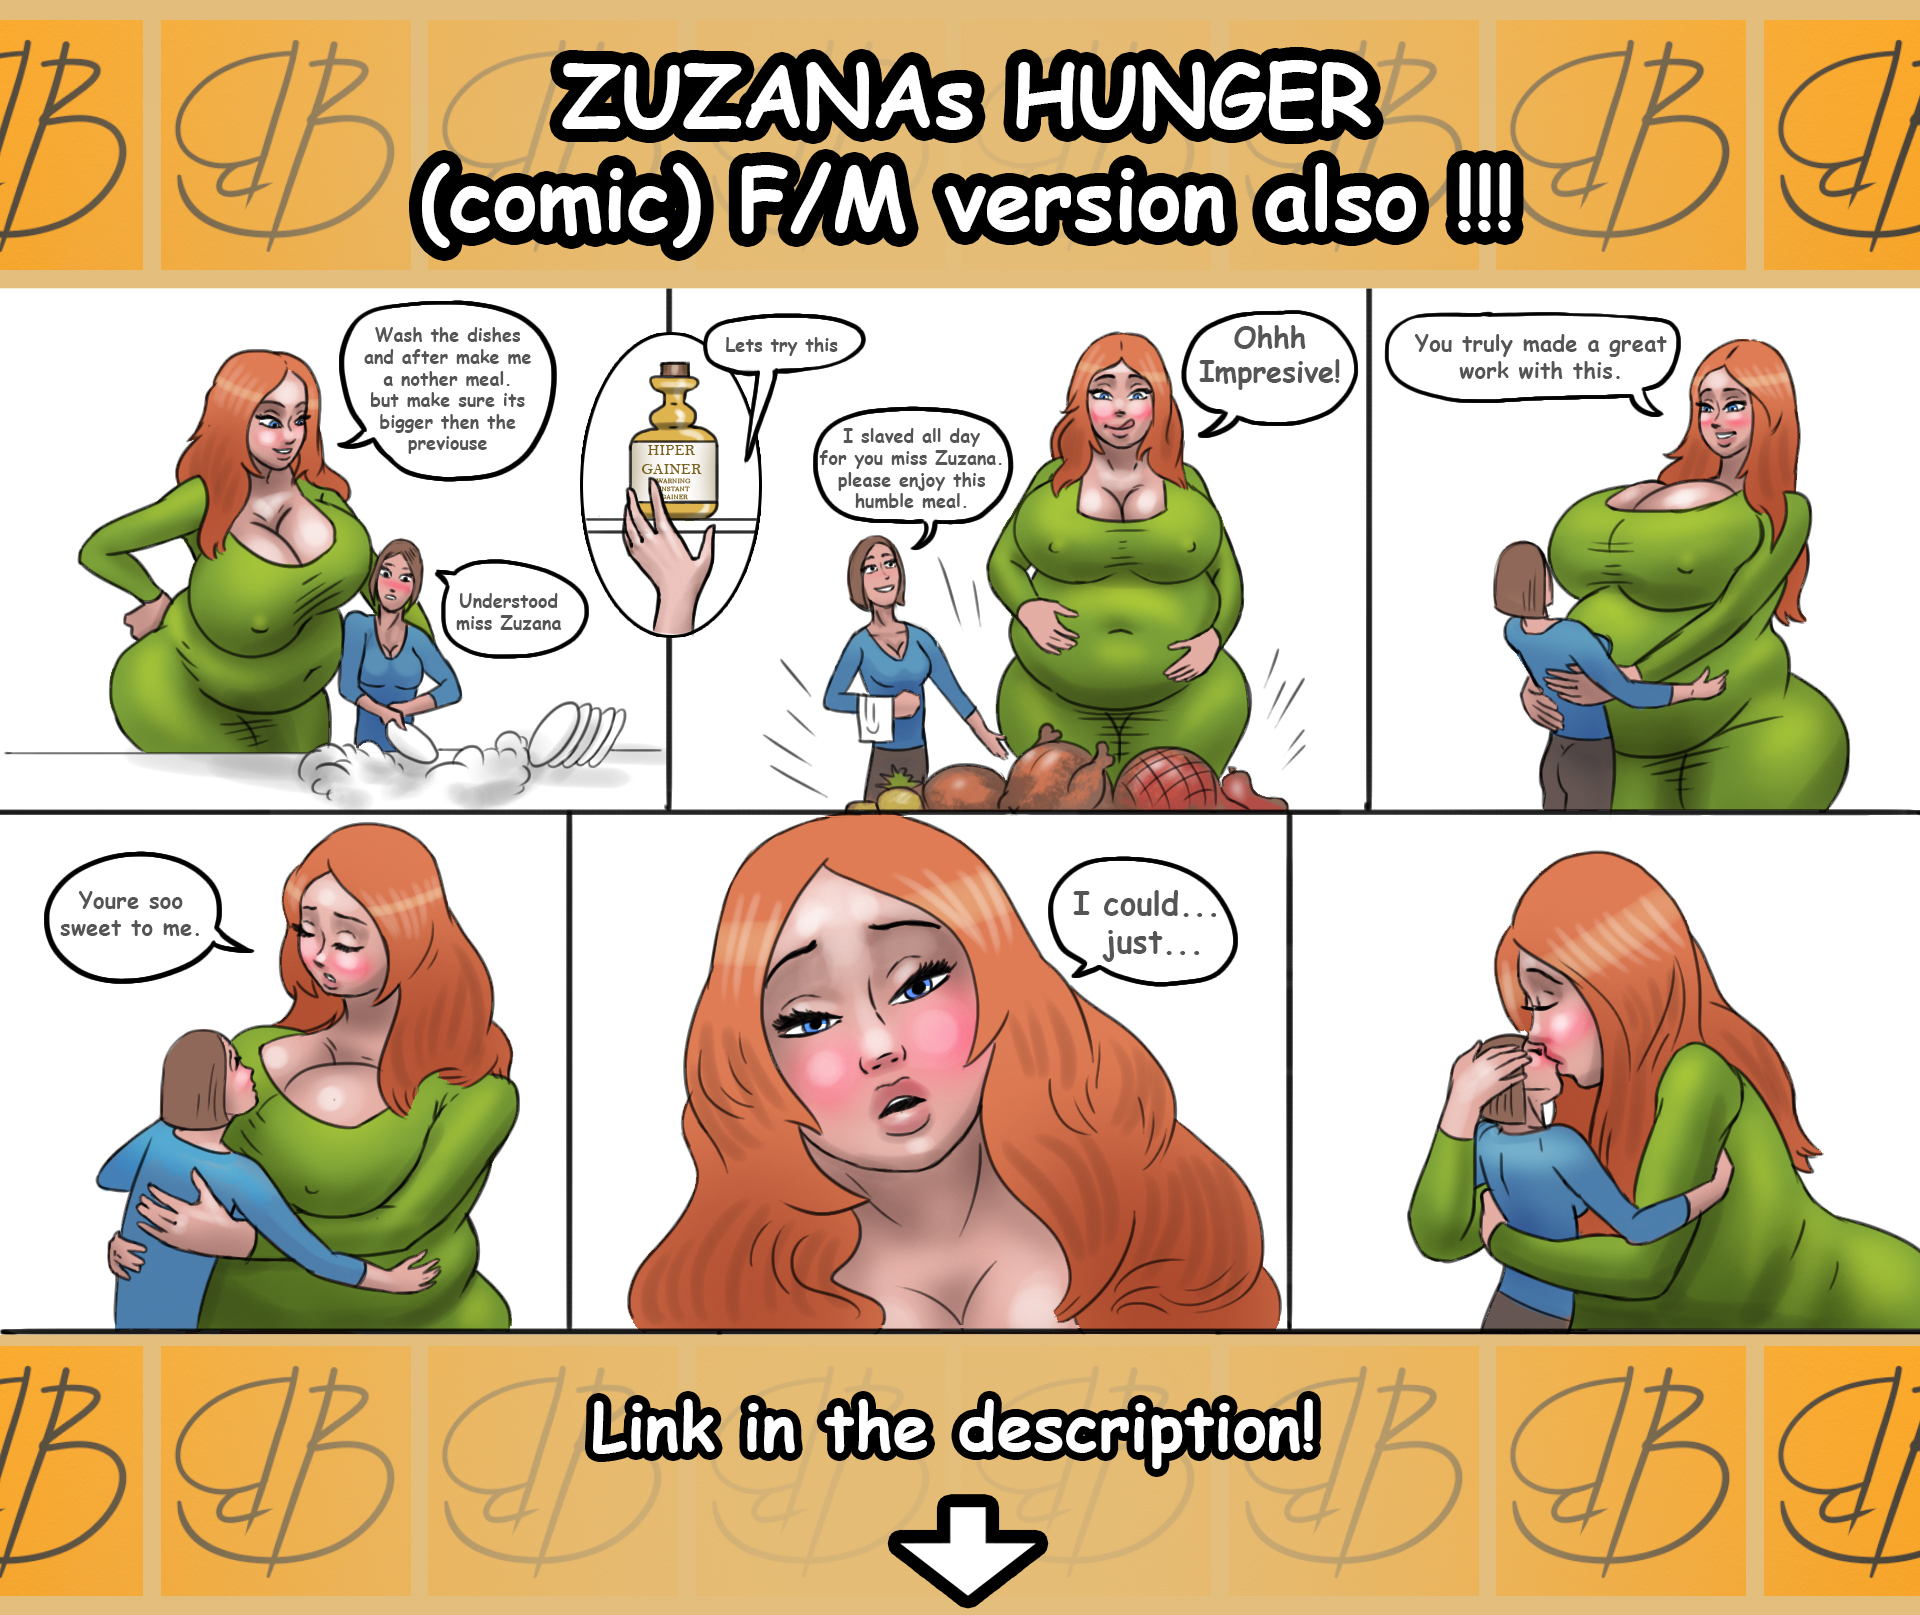 Zuzanas hunger (vore/stuffing)